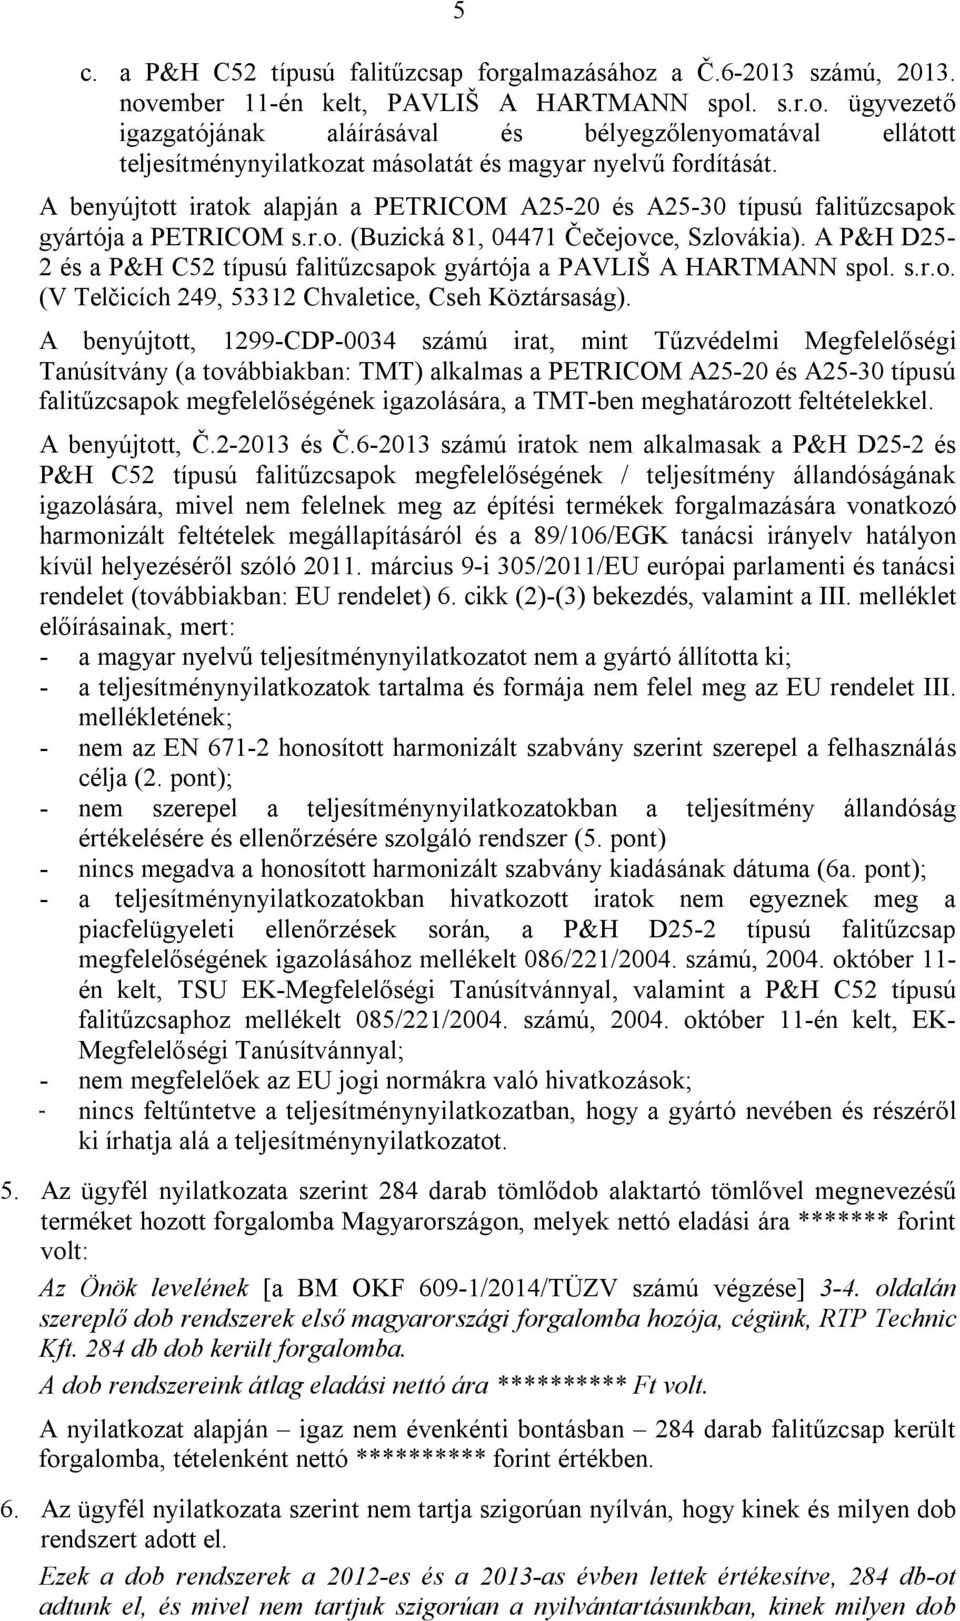 A P&H D25-2 és a P&H C52 típusú falitűzcsapok gyártója a PAVLIŠ A HARTMANN spol. s.r.o. (V Telčicích 249, 53312 Chvaletice, Cseh Köztársaság).